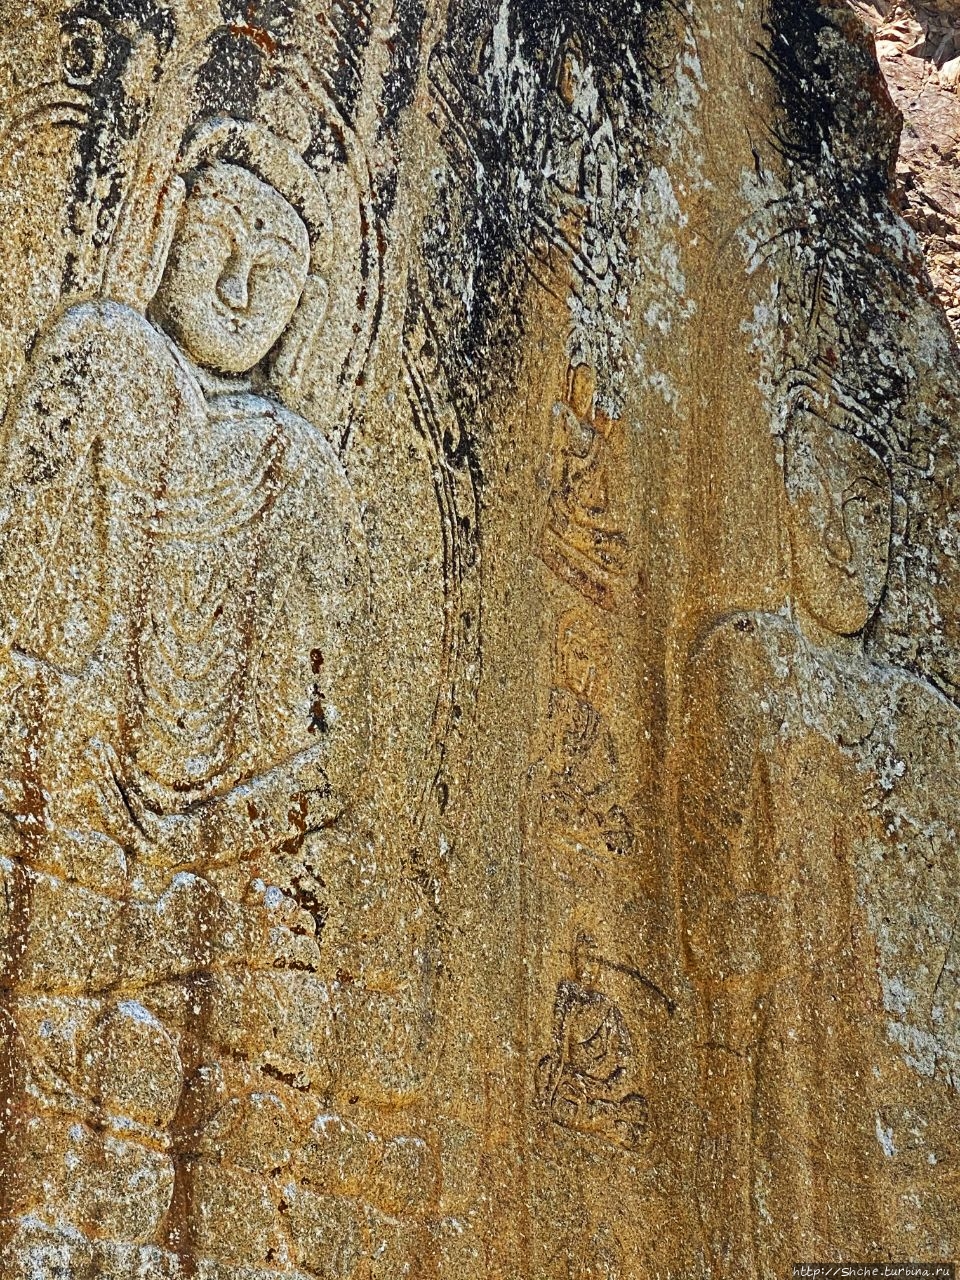 Камень Будды в Мантале Мантал, Пакистан